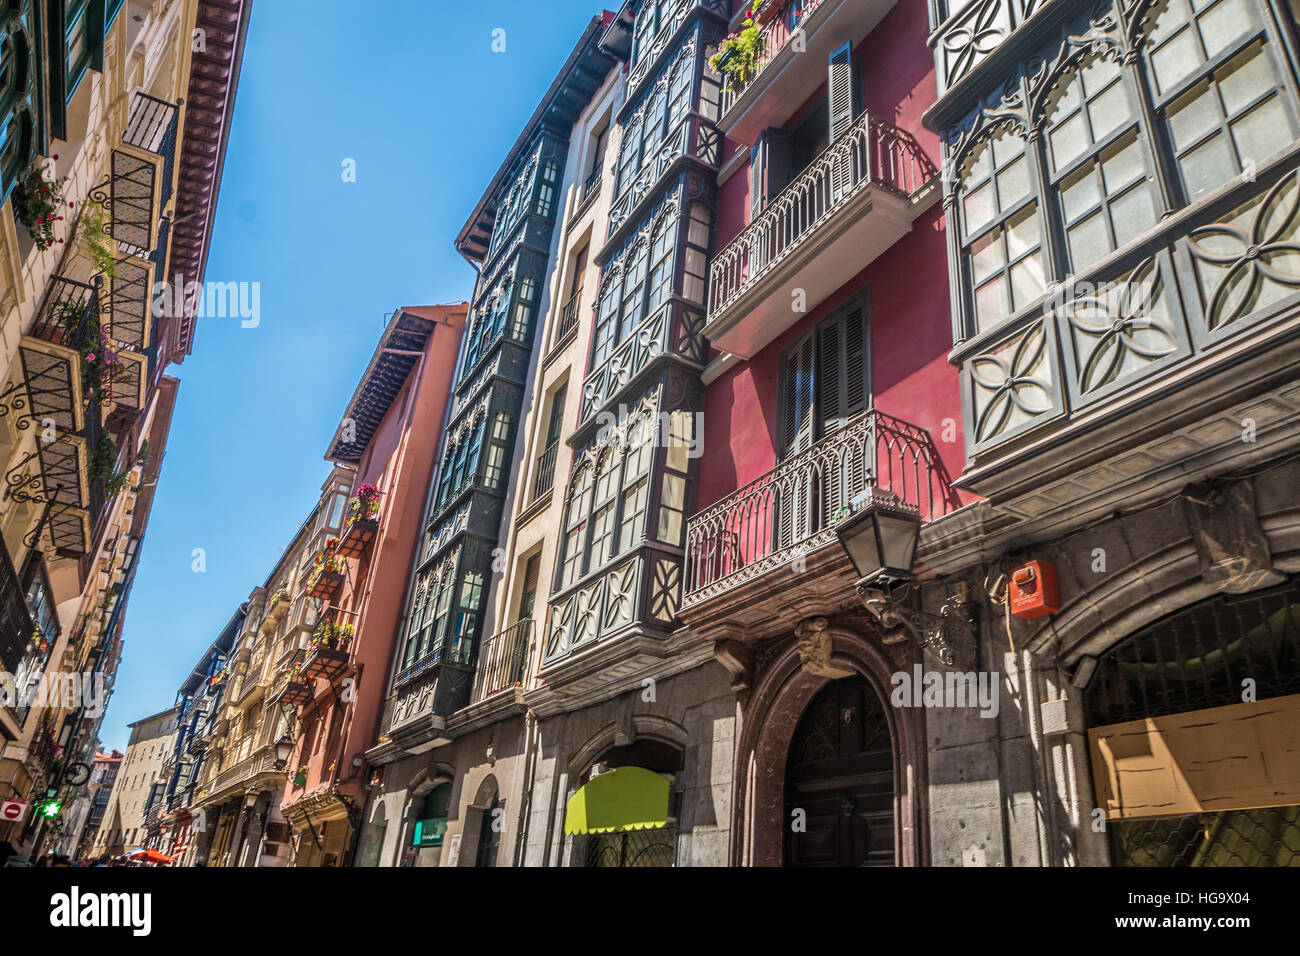 Le vieux Nice rue de Bilbao en Espagne Banque D'Images